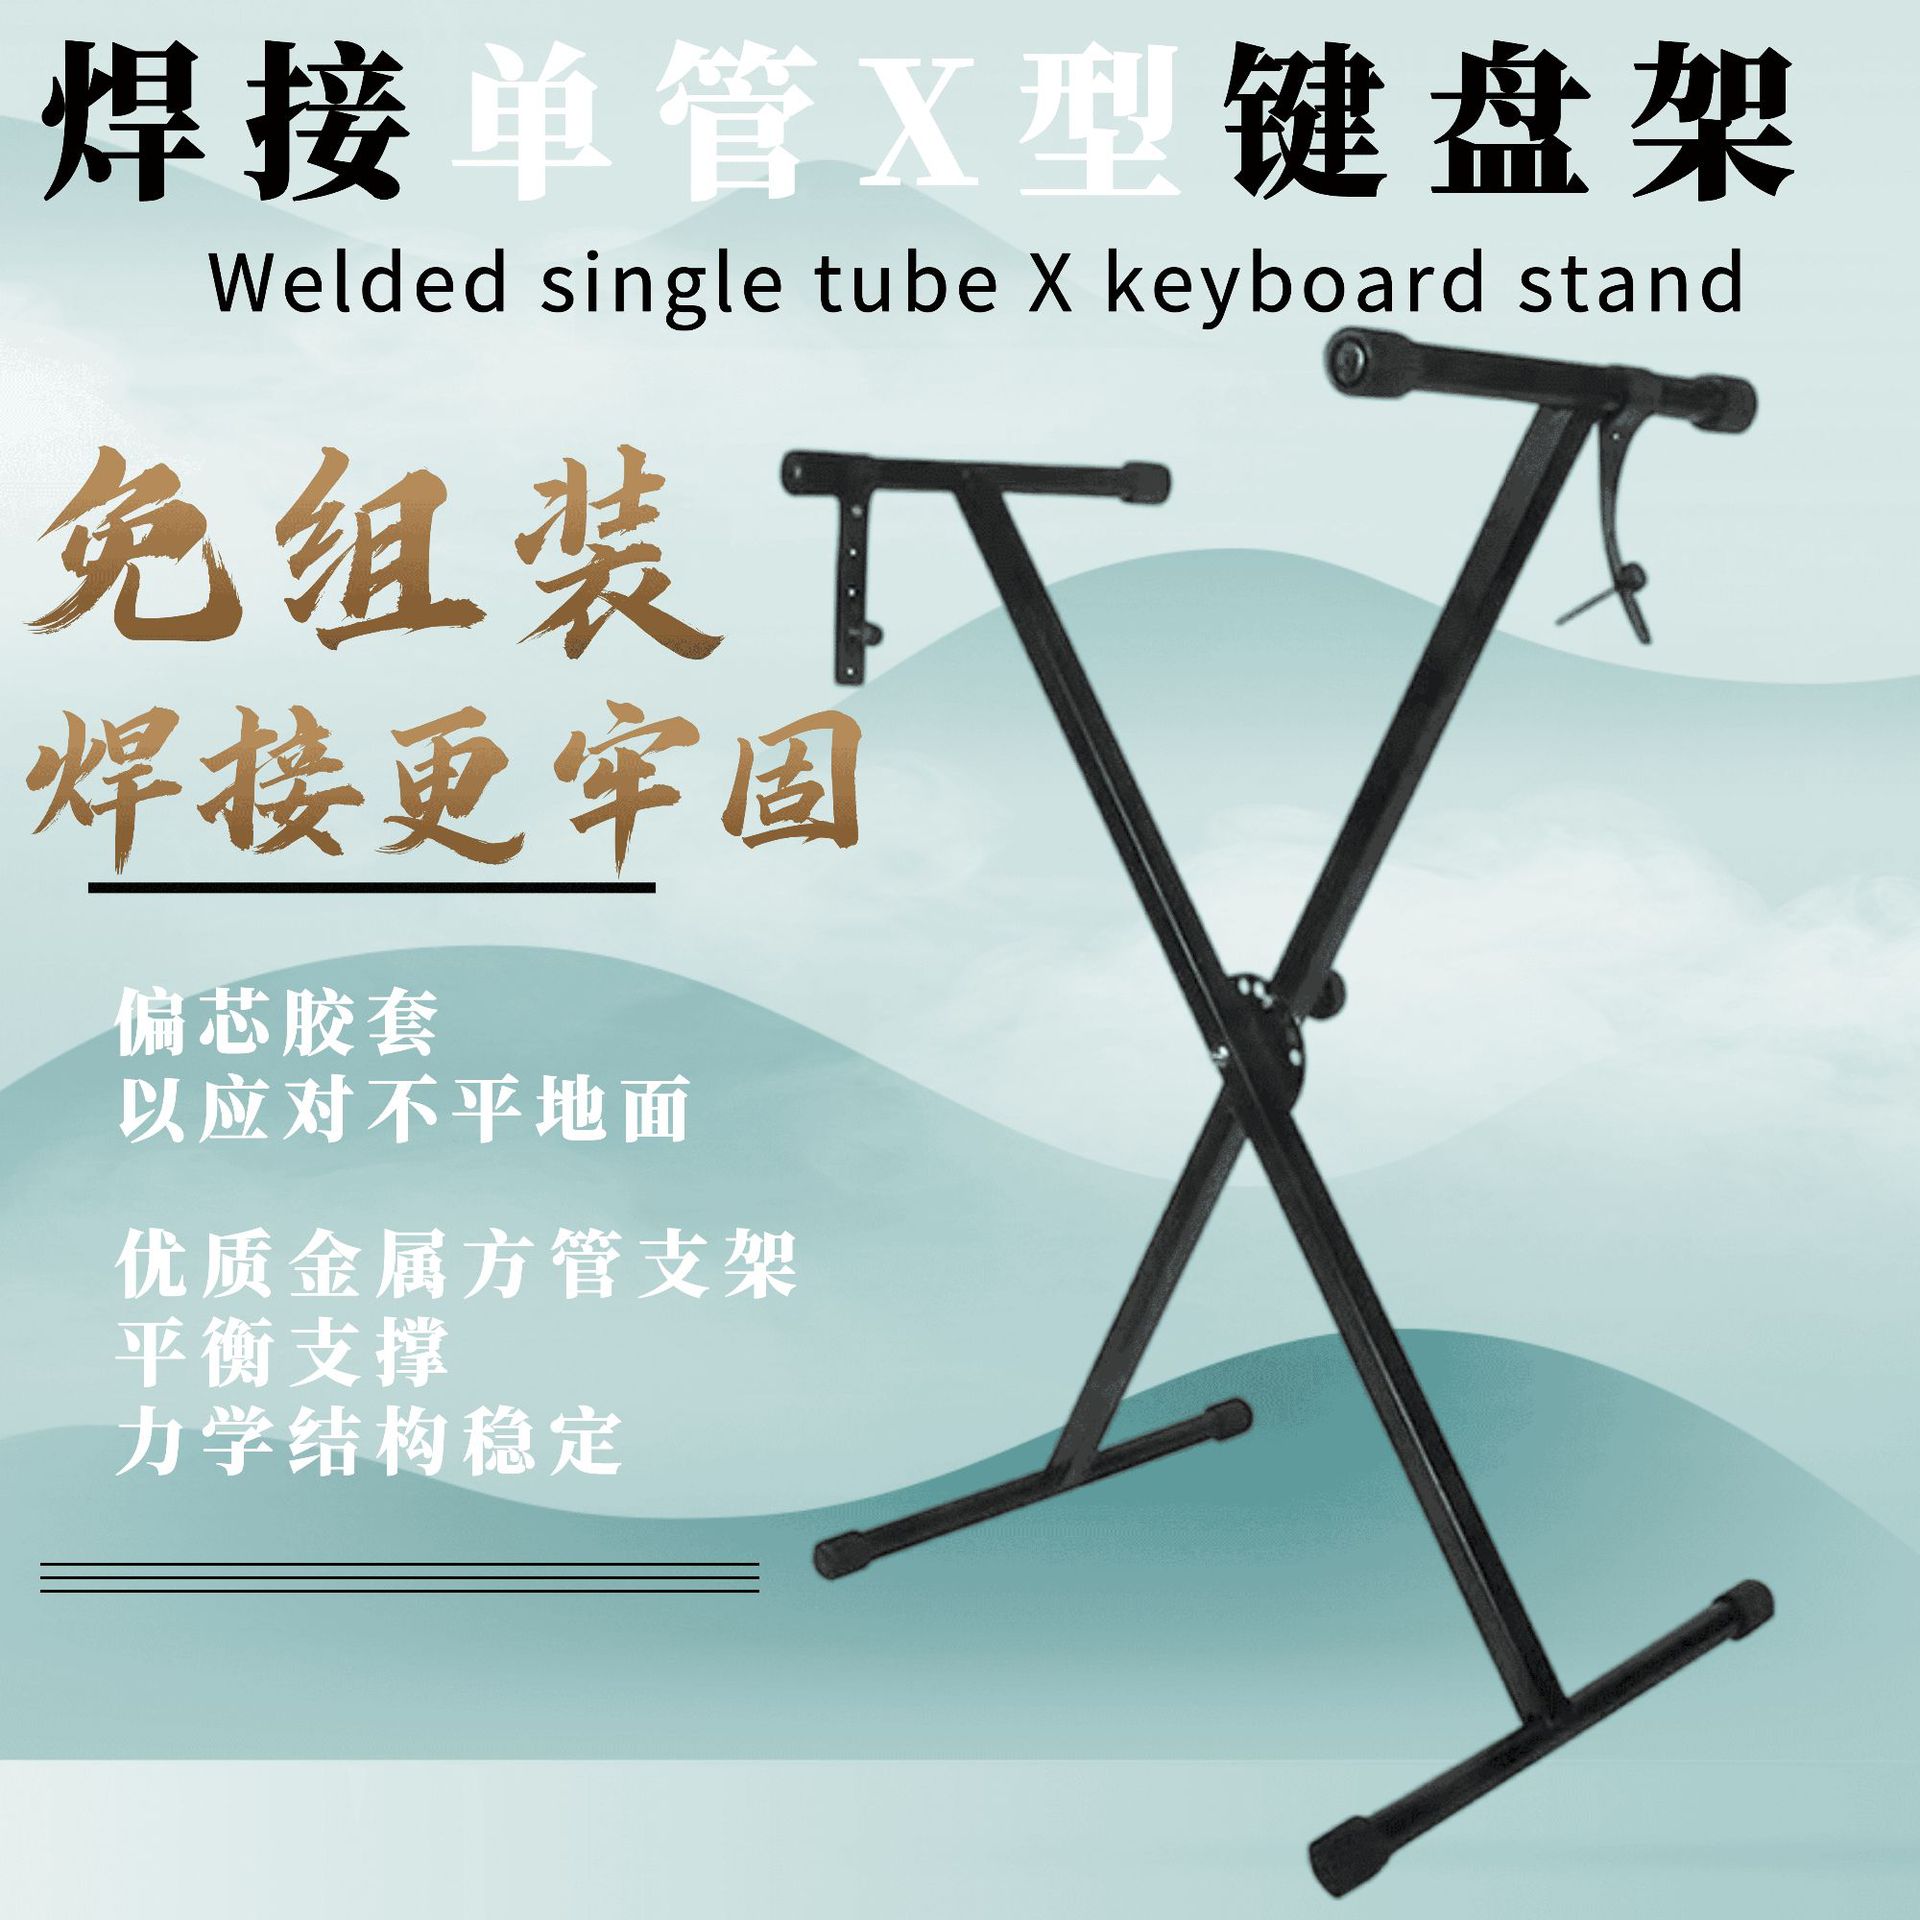 焊接免组装单管电子琴X型支架 电子琴支架 键盘乐器支架双管配件图